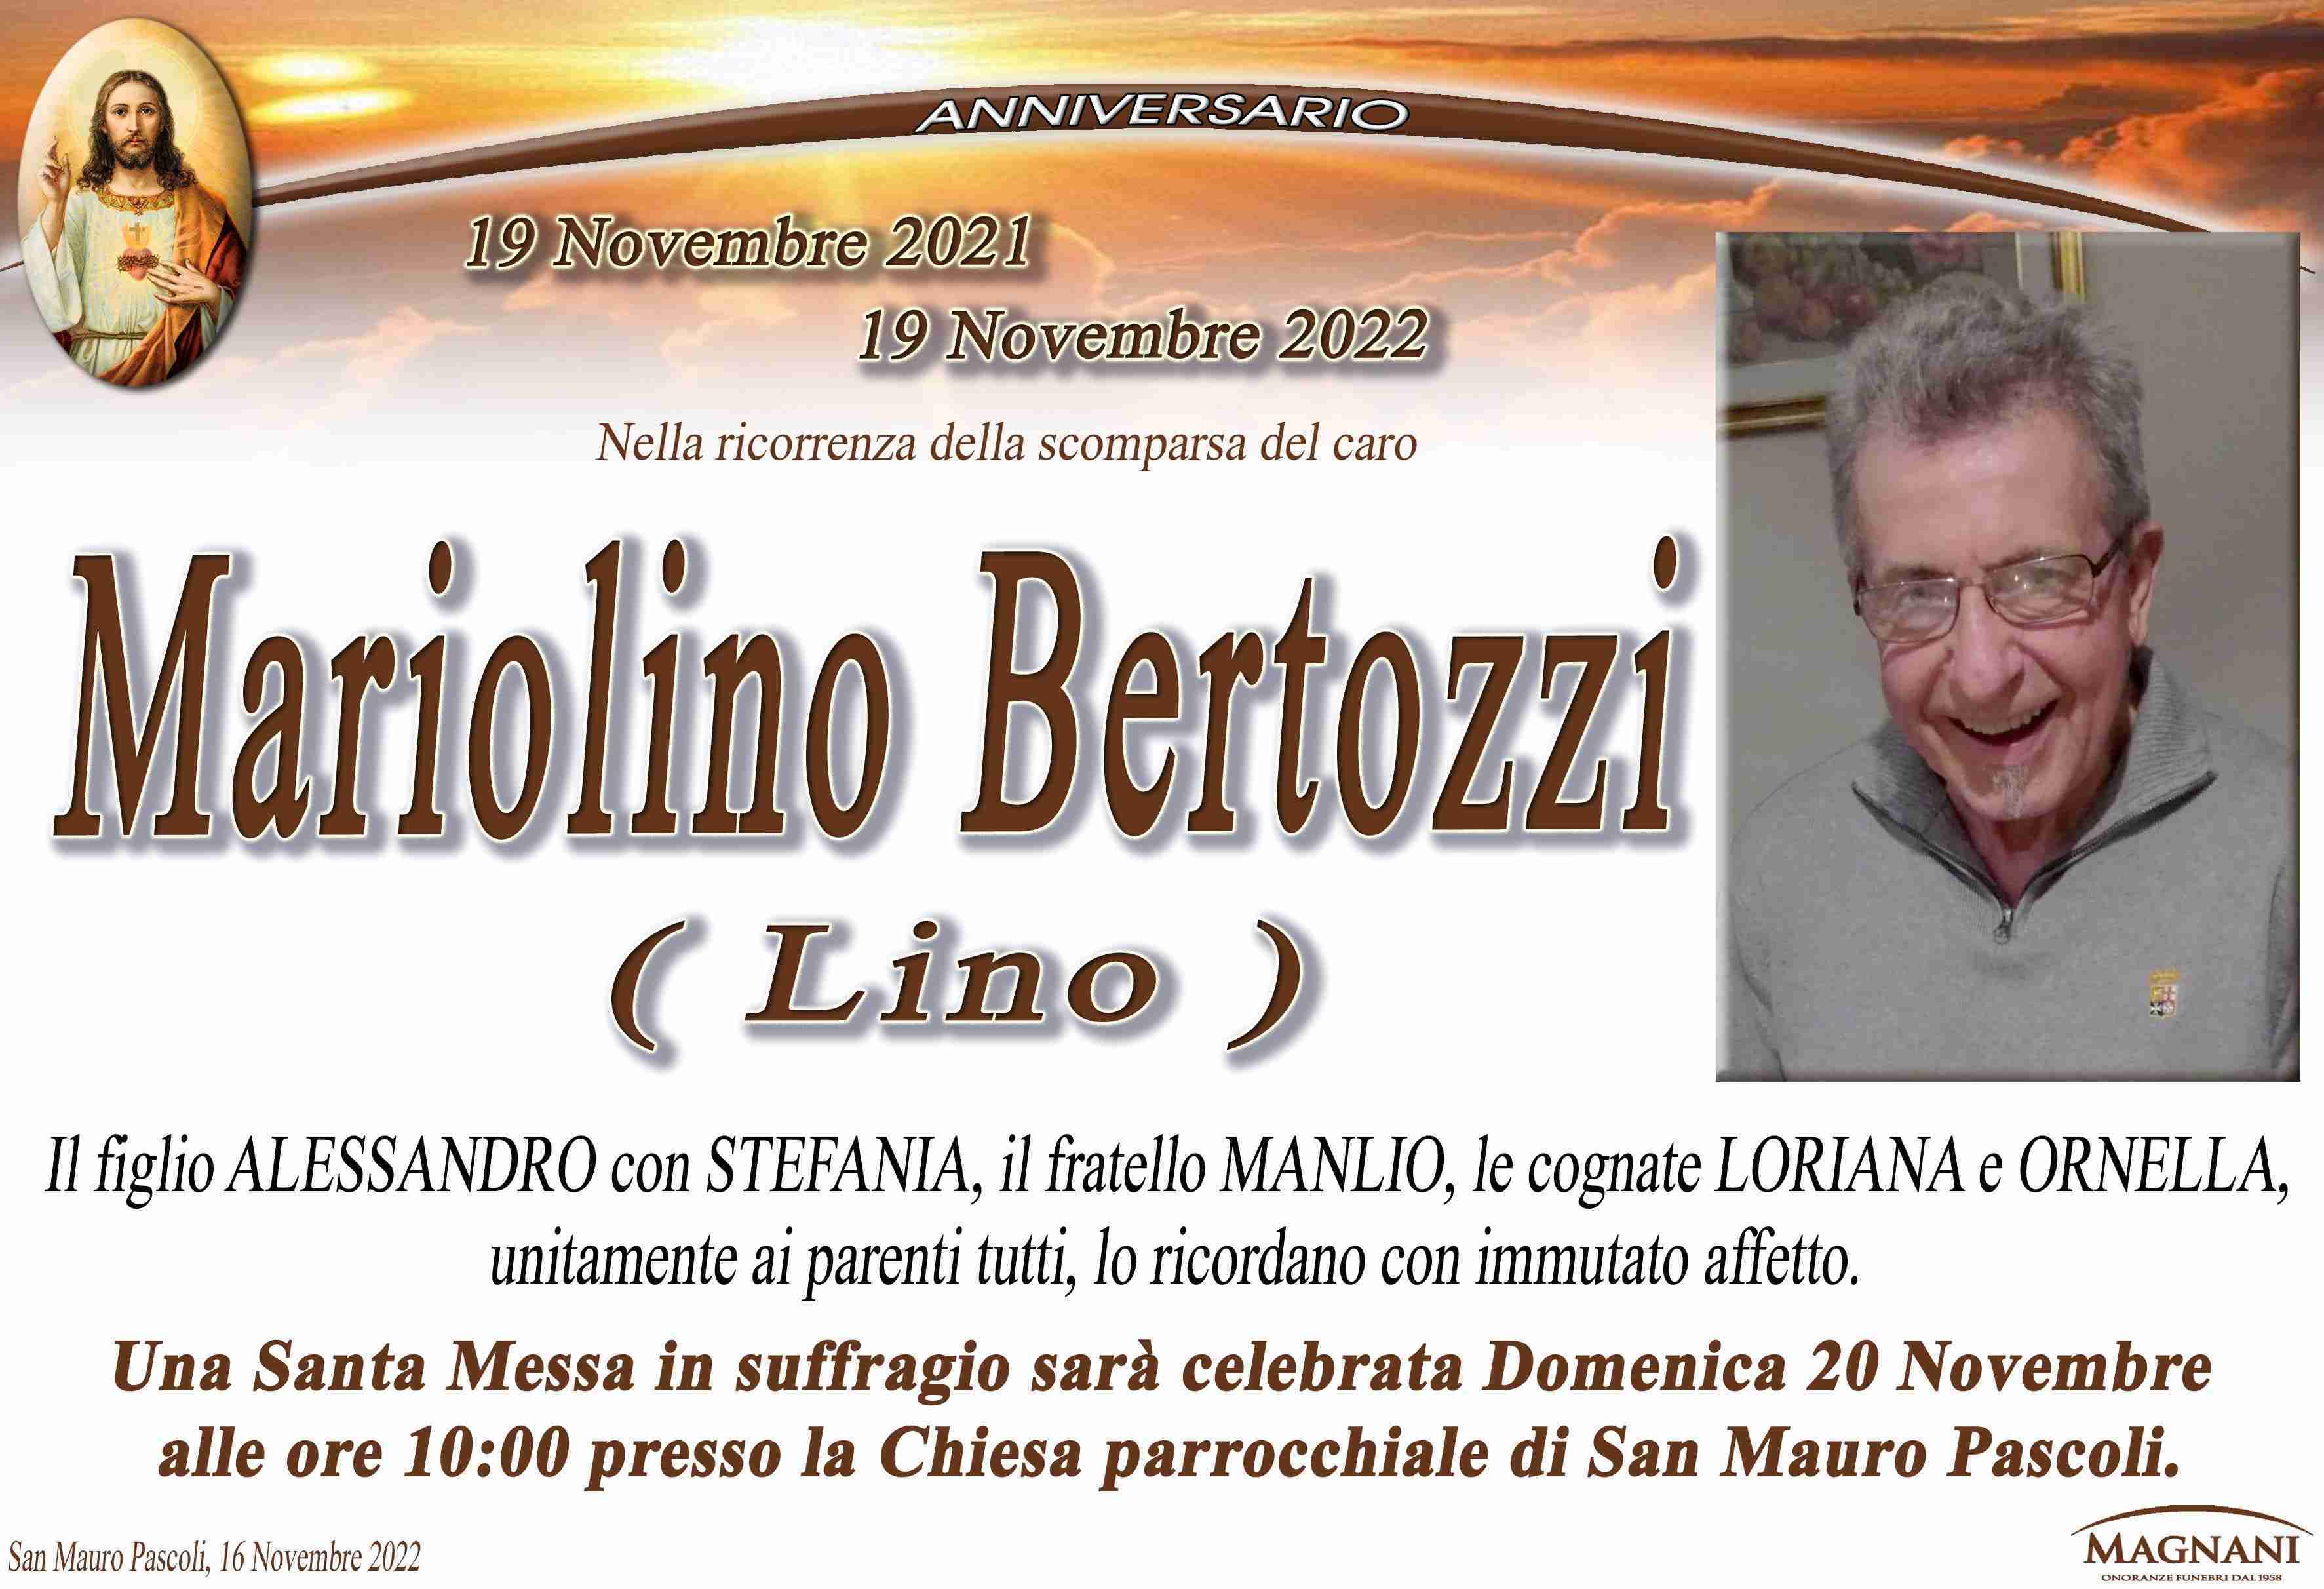 Mariolino Bertozzi